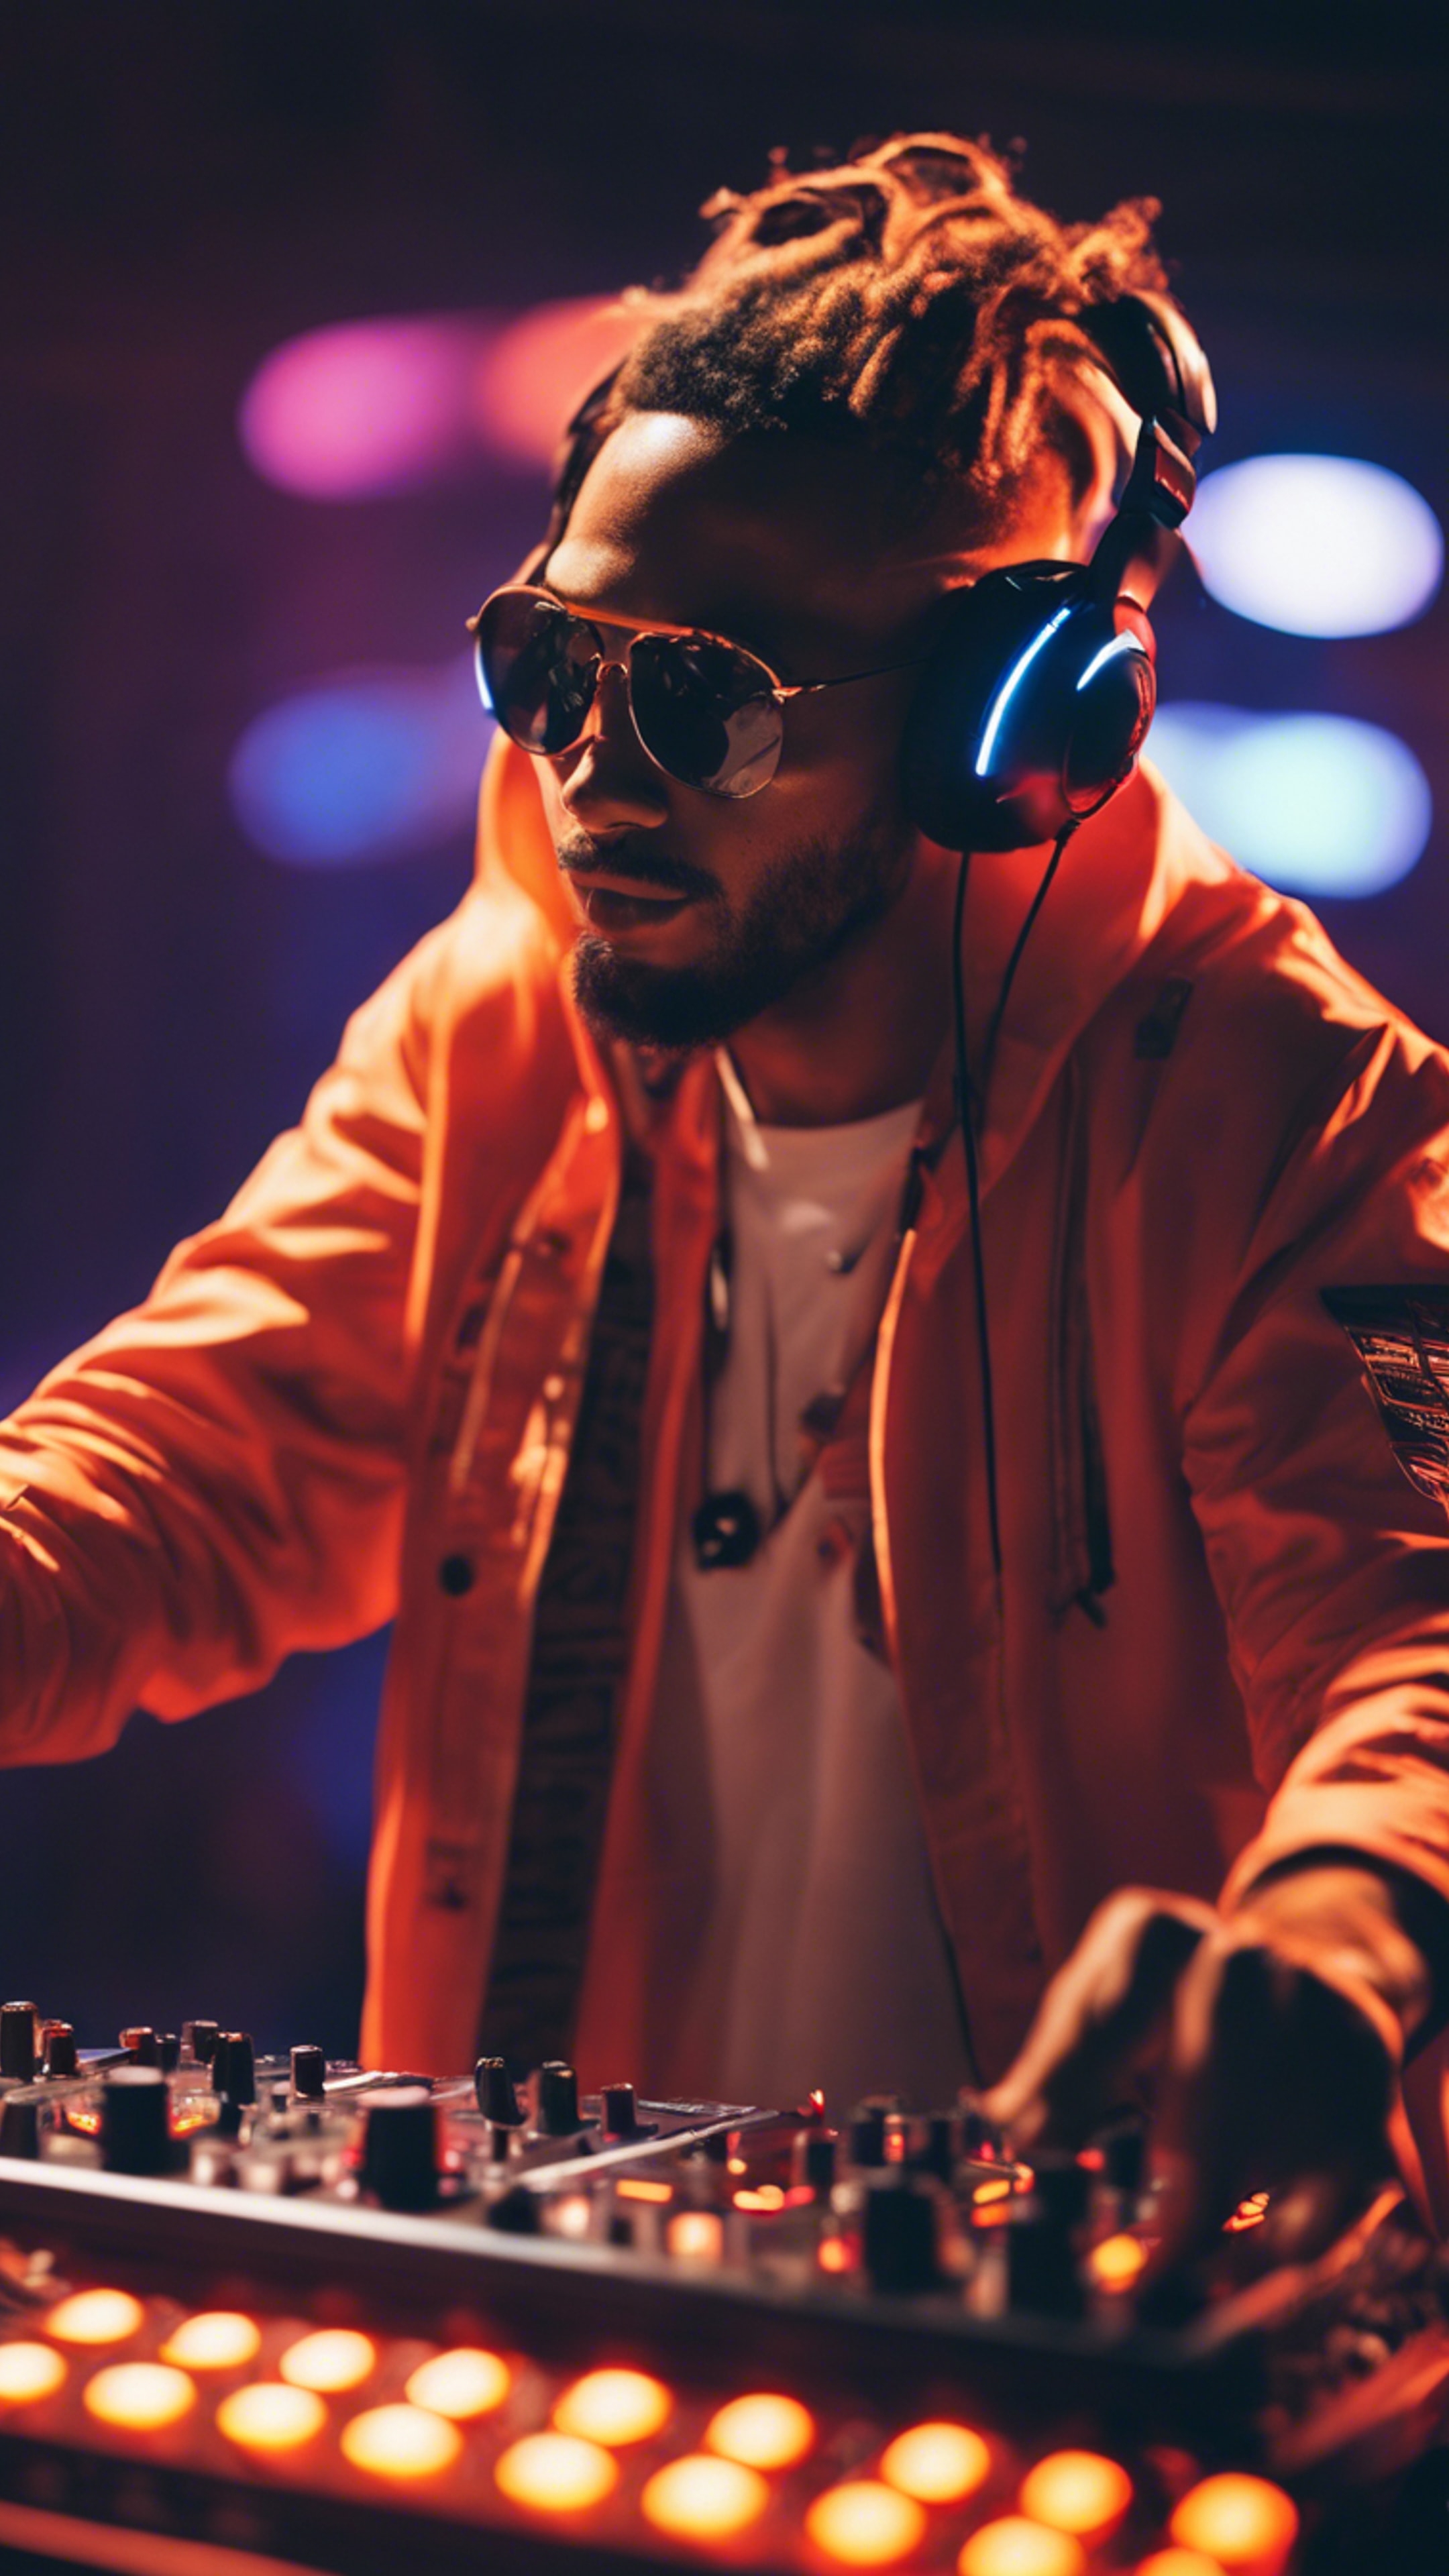 An energetic DJ at a music festival wearing neon orange headphones. Kertas dinding[135547dc2eef4b3588bf]